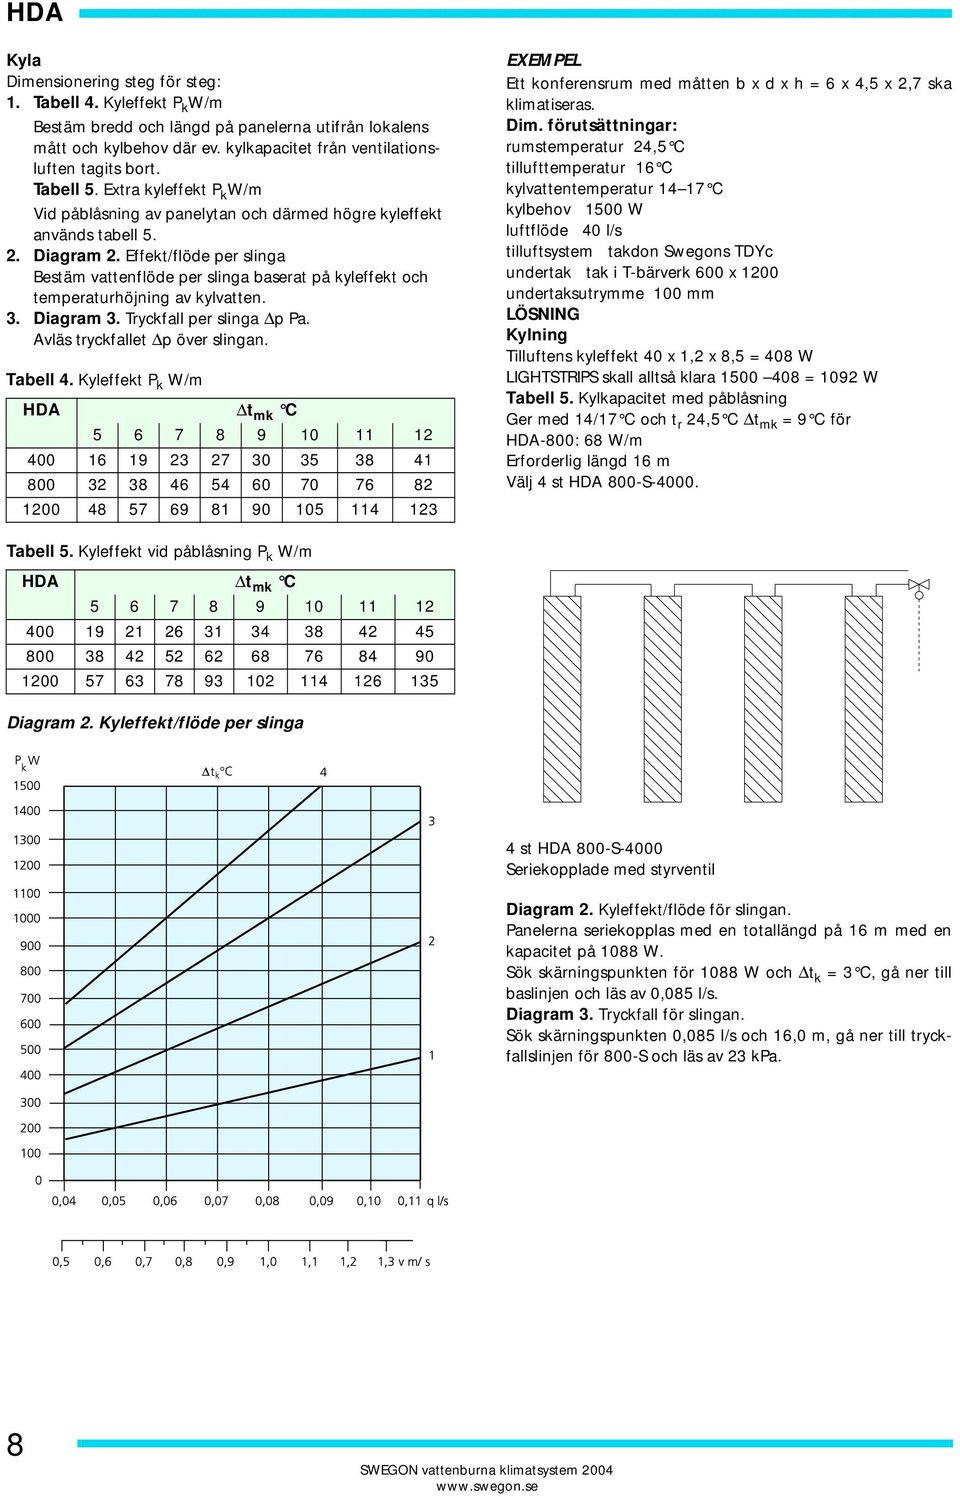 Extra kyleffekt P k W/m Vid påblåsning av panelytan och därmed högre kyleffekt används tabell 5. 2. Diagram 2.